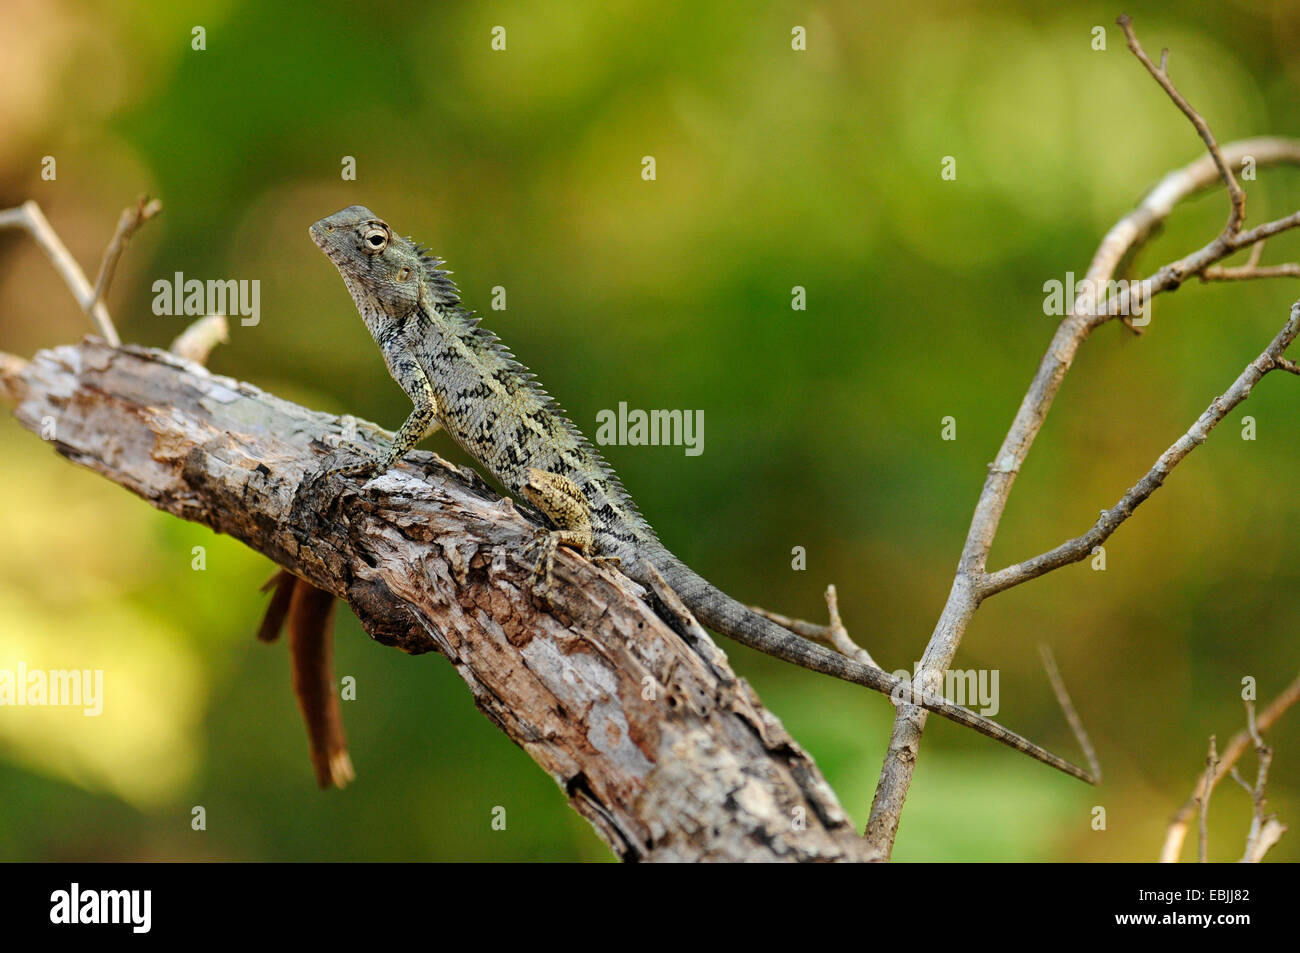 Bloodsucker commun indien, lézard, variable variable agama, chameleon (Calotes versicolor), assis sur une branche, le Sri Lanka, le Parc National de Wilpattu Banque D'Images